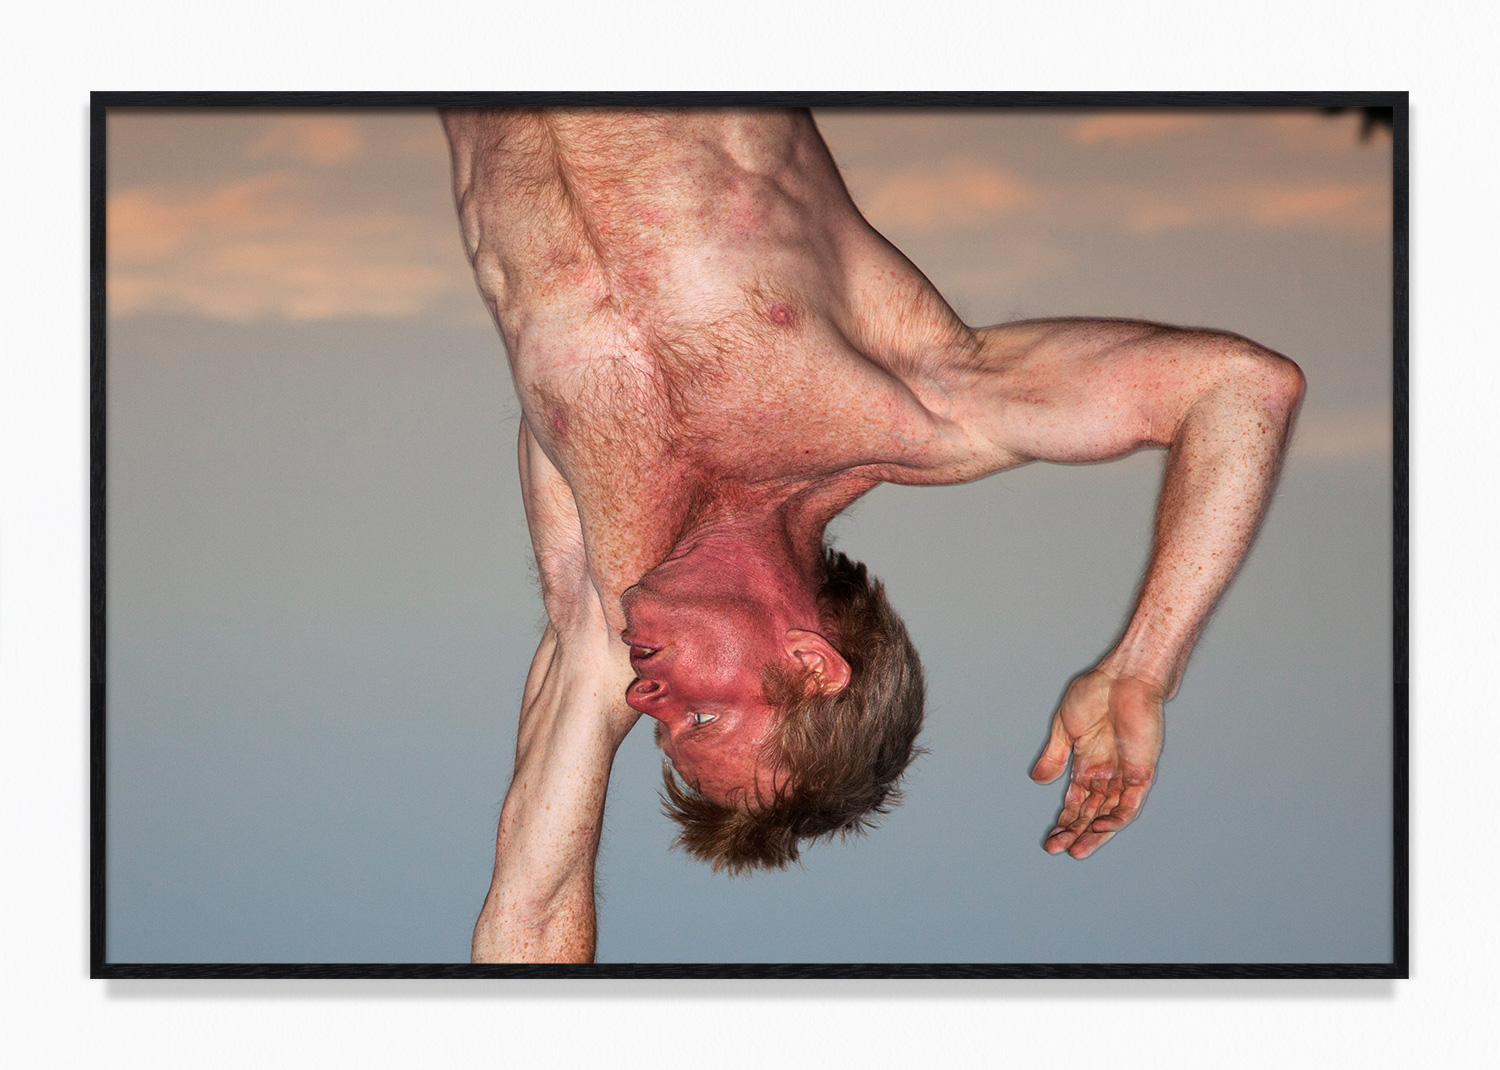 Naked Man Upside Down lactating joi